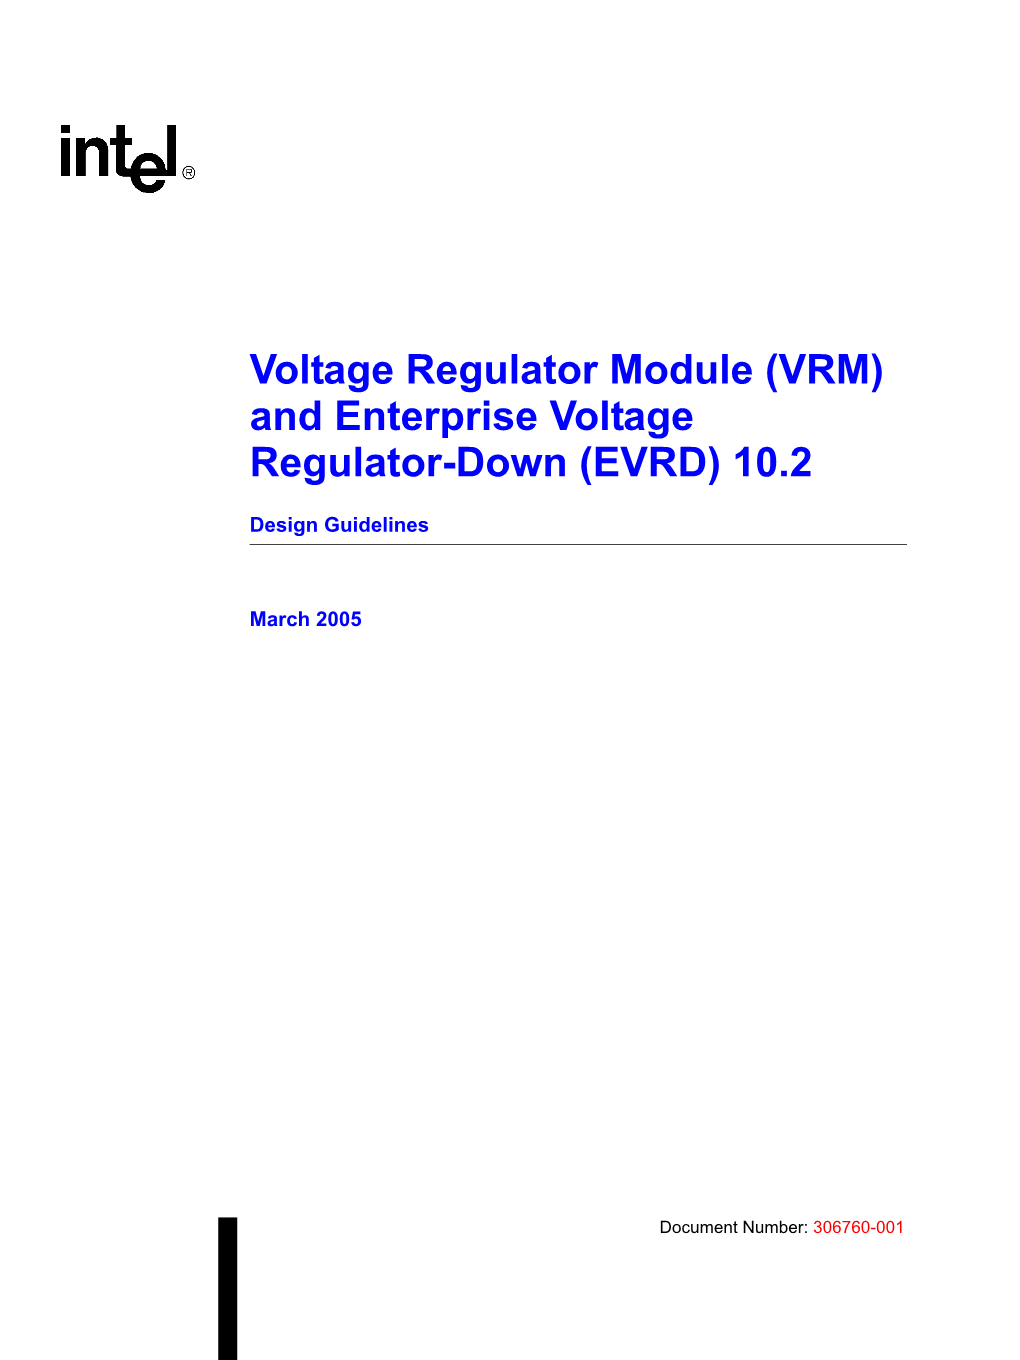 Voltage Regulator Module (VRM) and Enterprise Voltage Regulator-Down (EVRD) 10.2